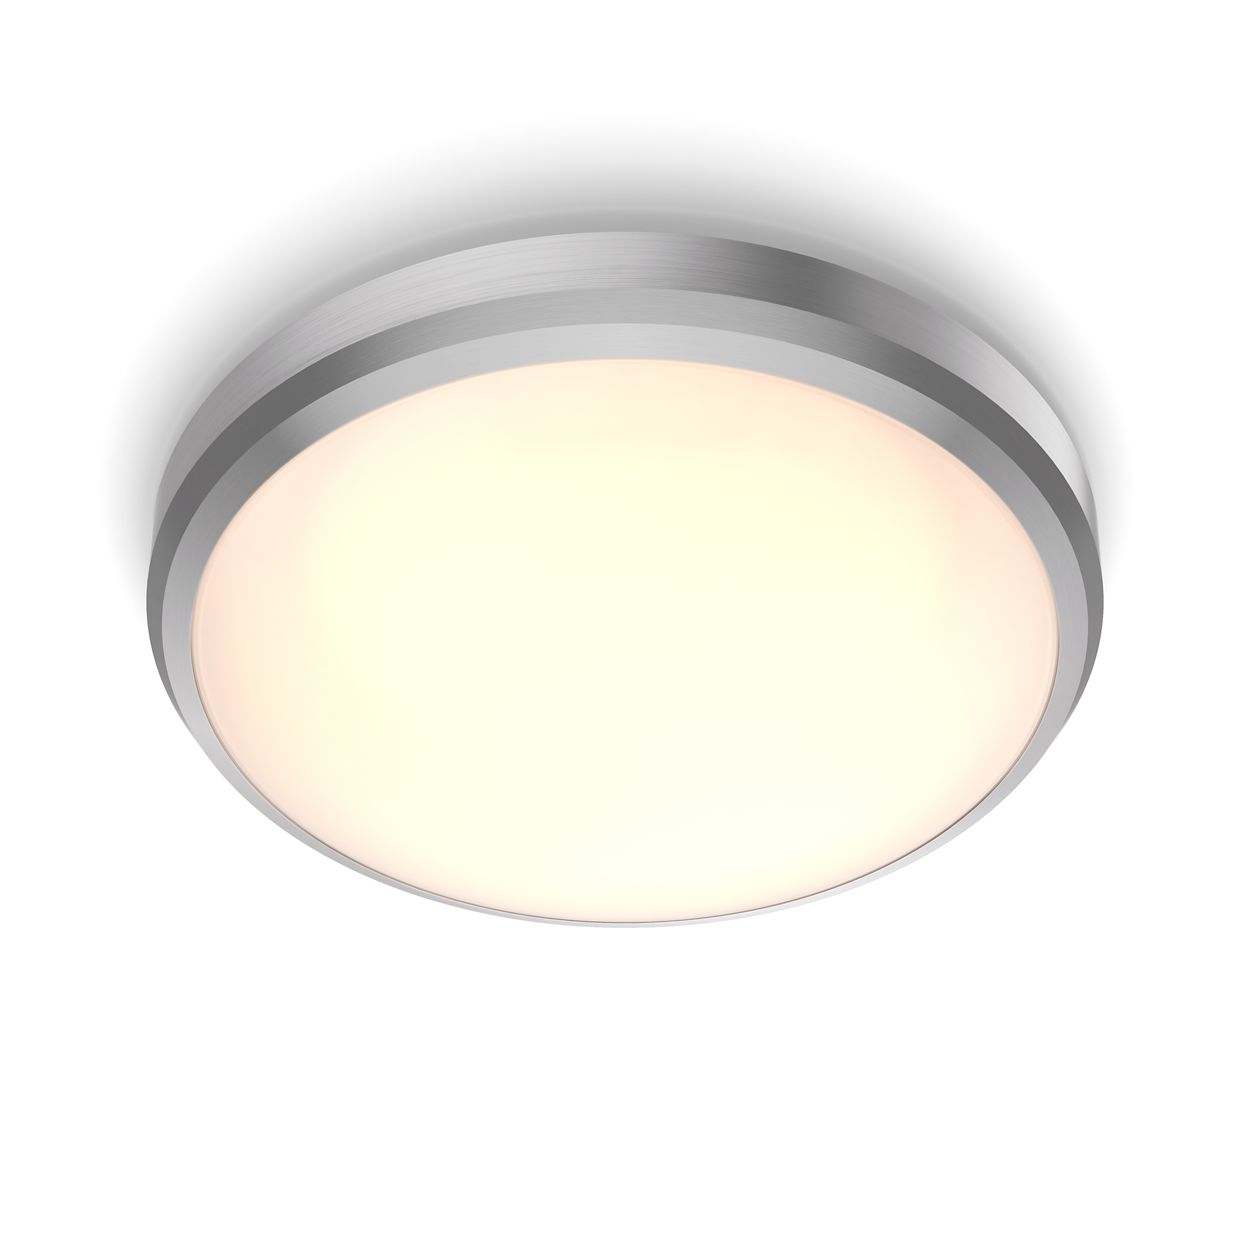 Comfortabel LED-licht dat aangenaam is voor je ogen